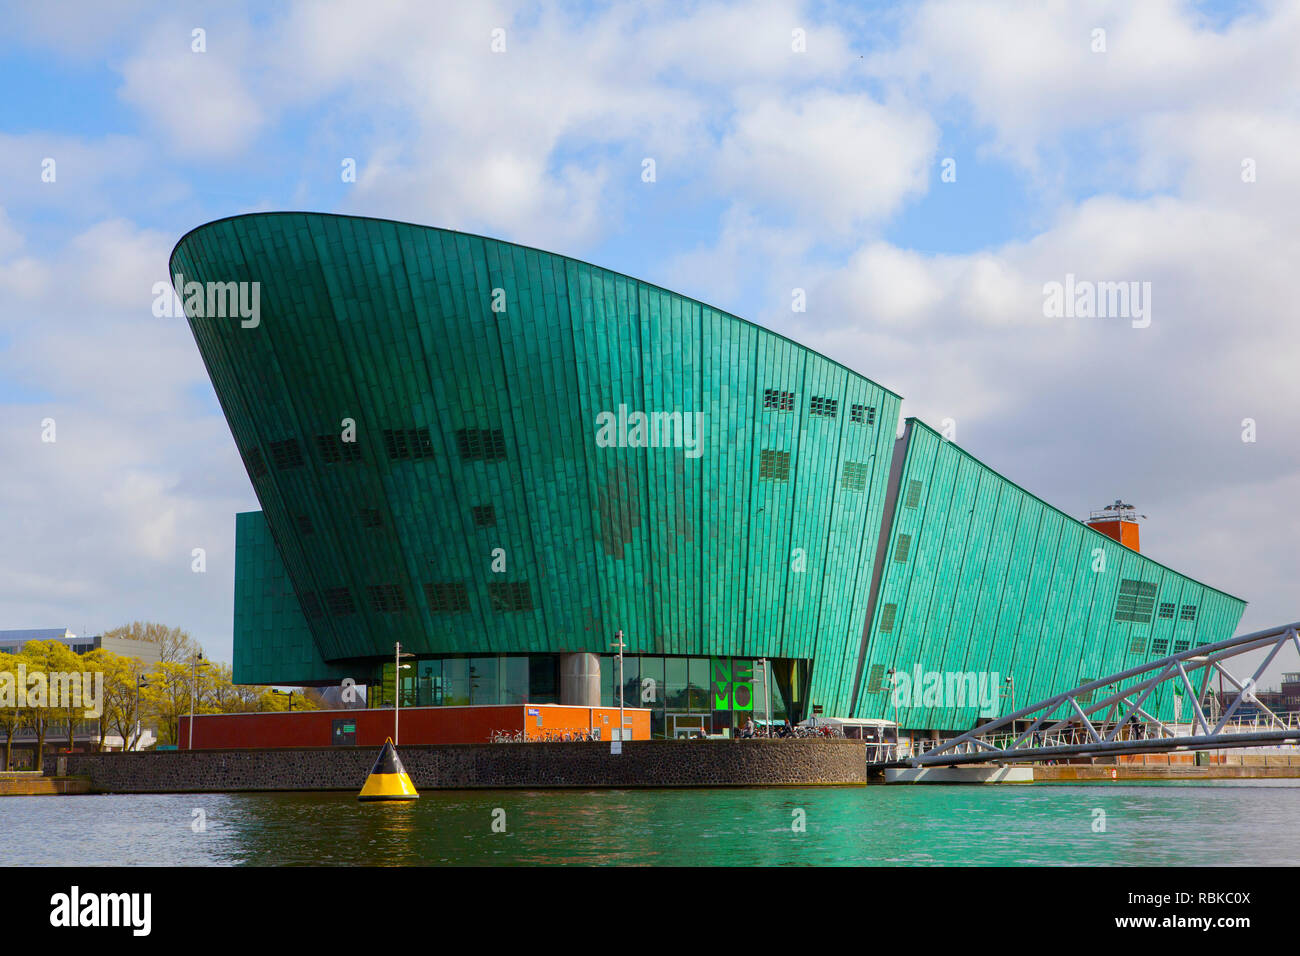 Musée scientifique Nemo, Amsterdam, Pays-Bas. Banque D'Images